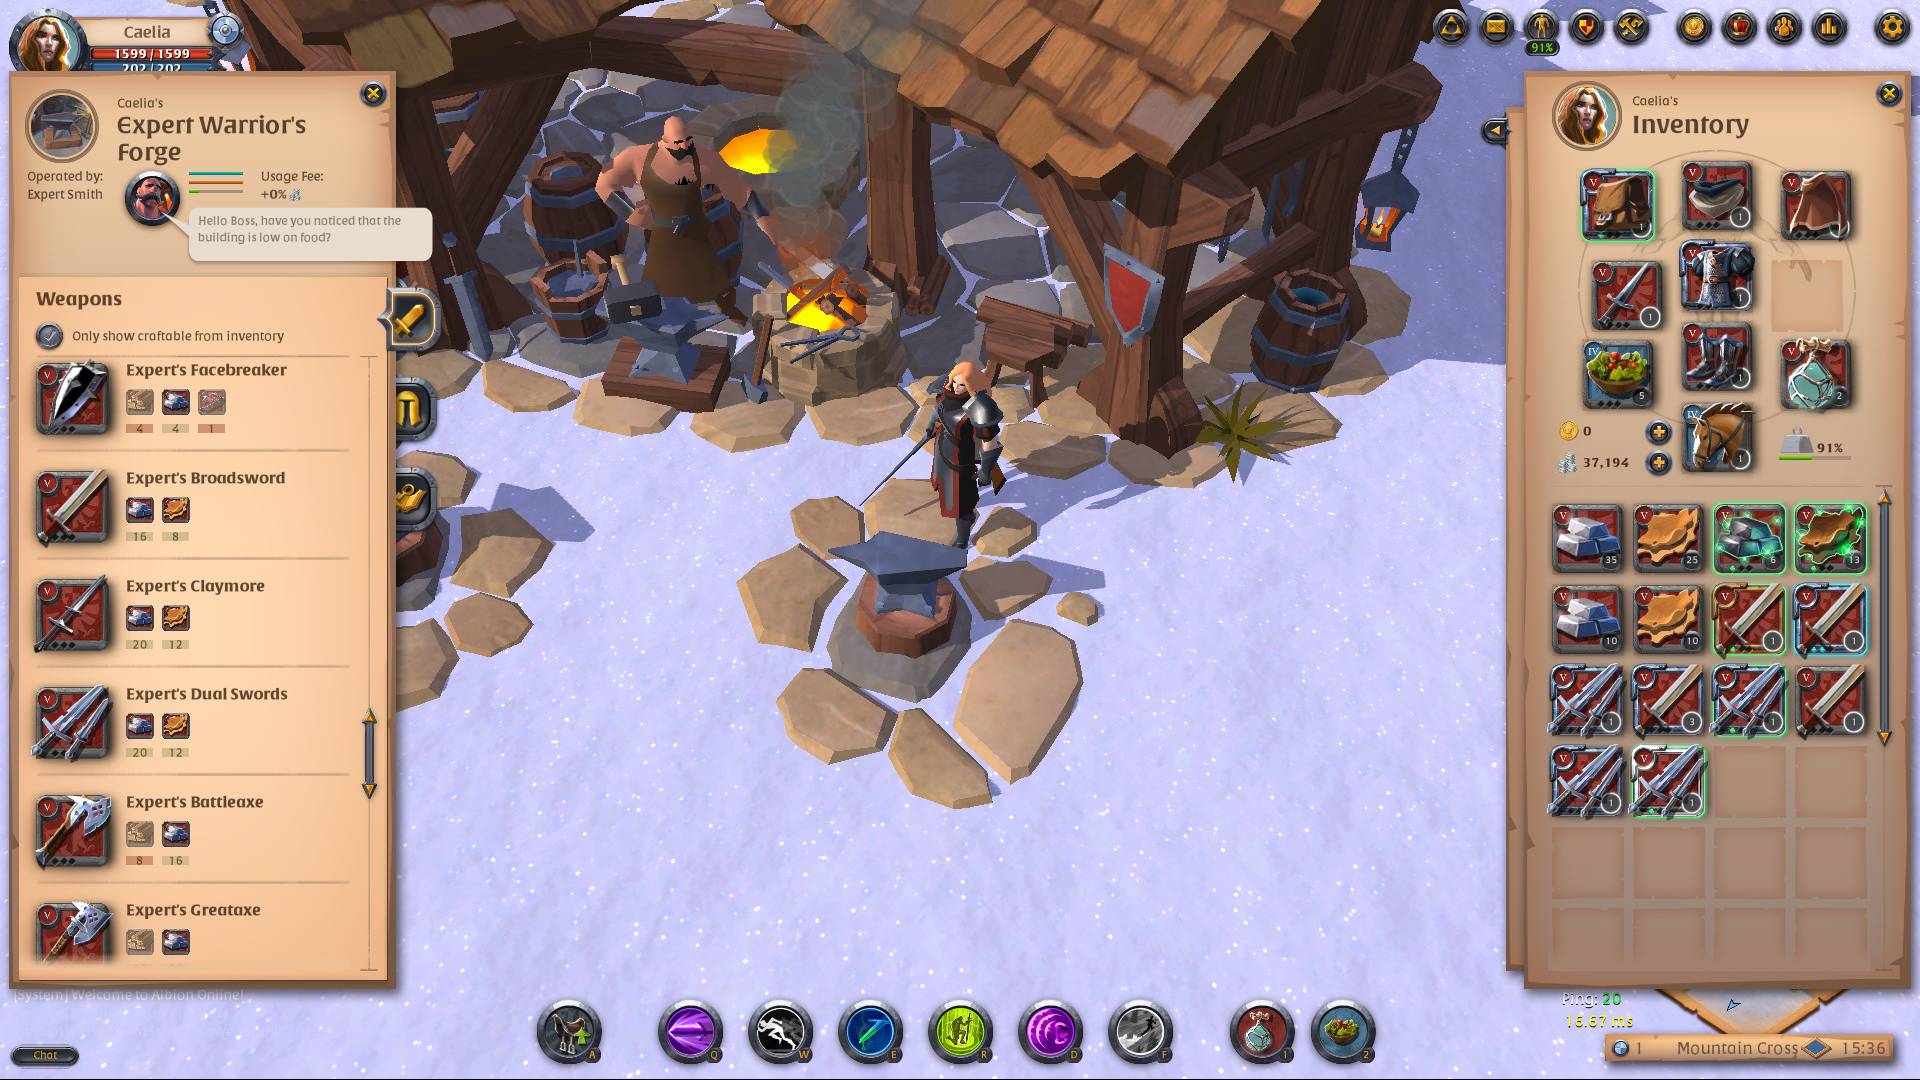 I migliori giochi per PC gratuiti: Albion online. L'immagine mostra un personaggio in piedi fuori da una casa in una giornata nevosa, con un sacco di gioco